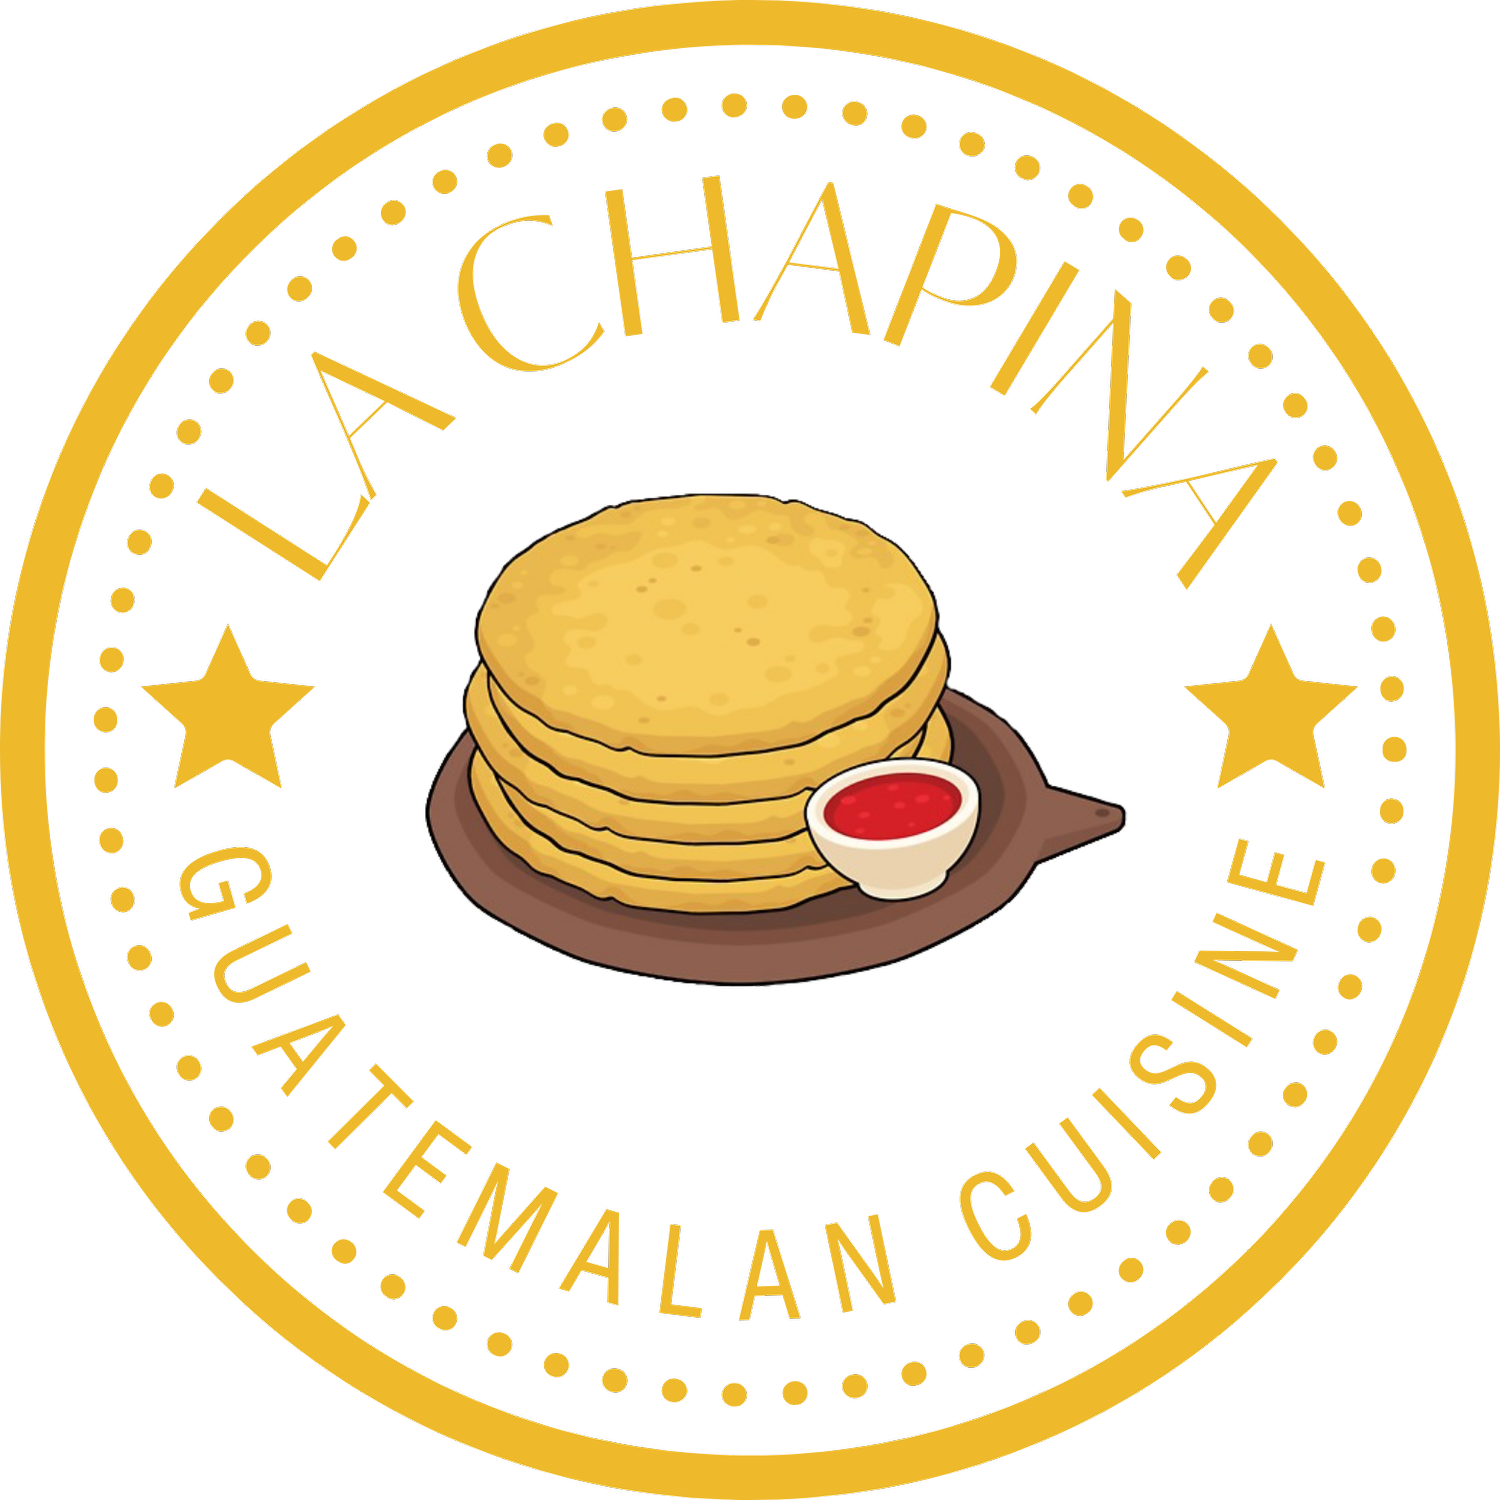 La Chapina